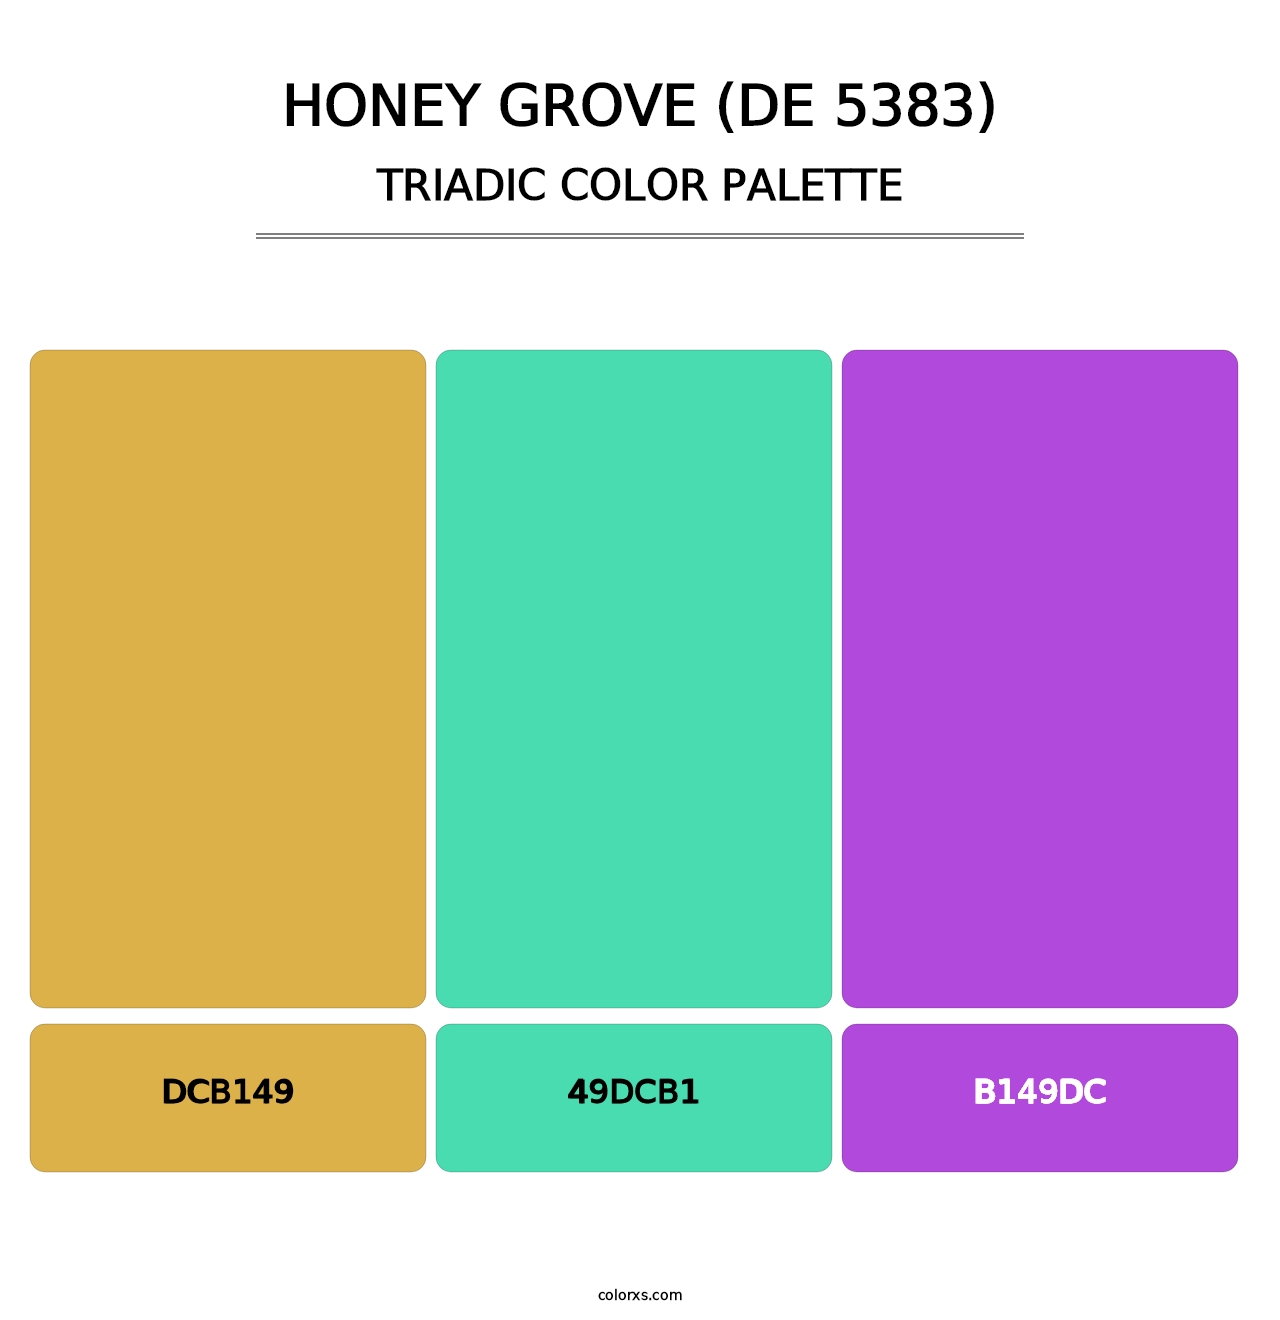 Honey Grove (DE 5383) - Triadic Color Palette